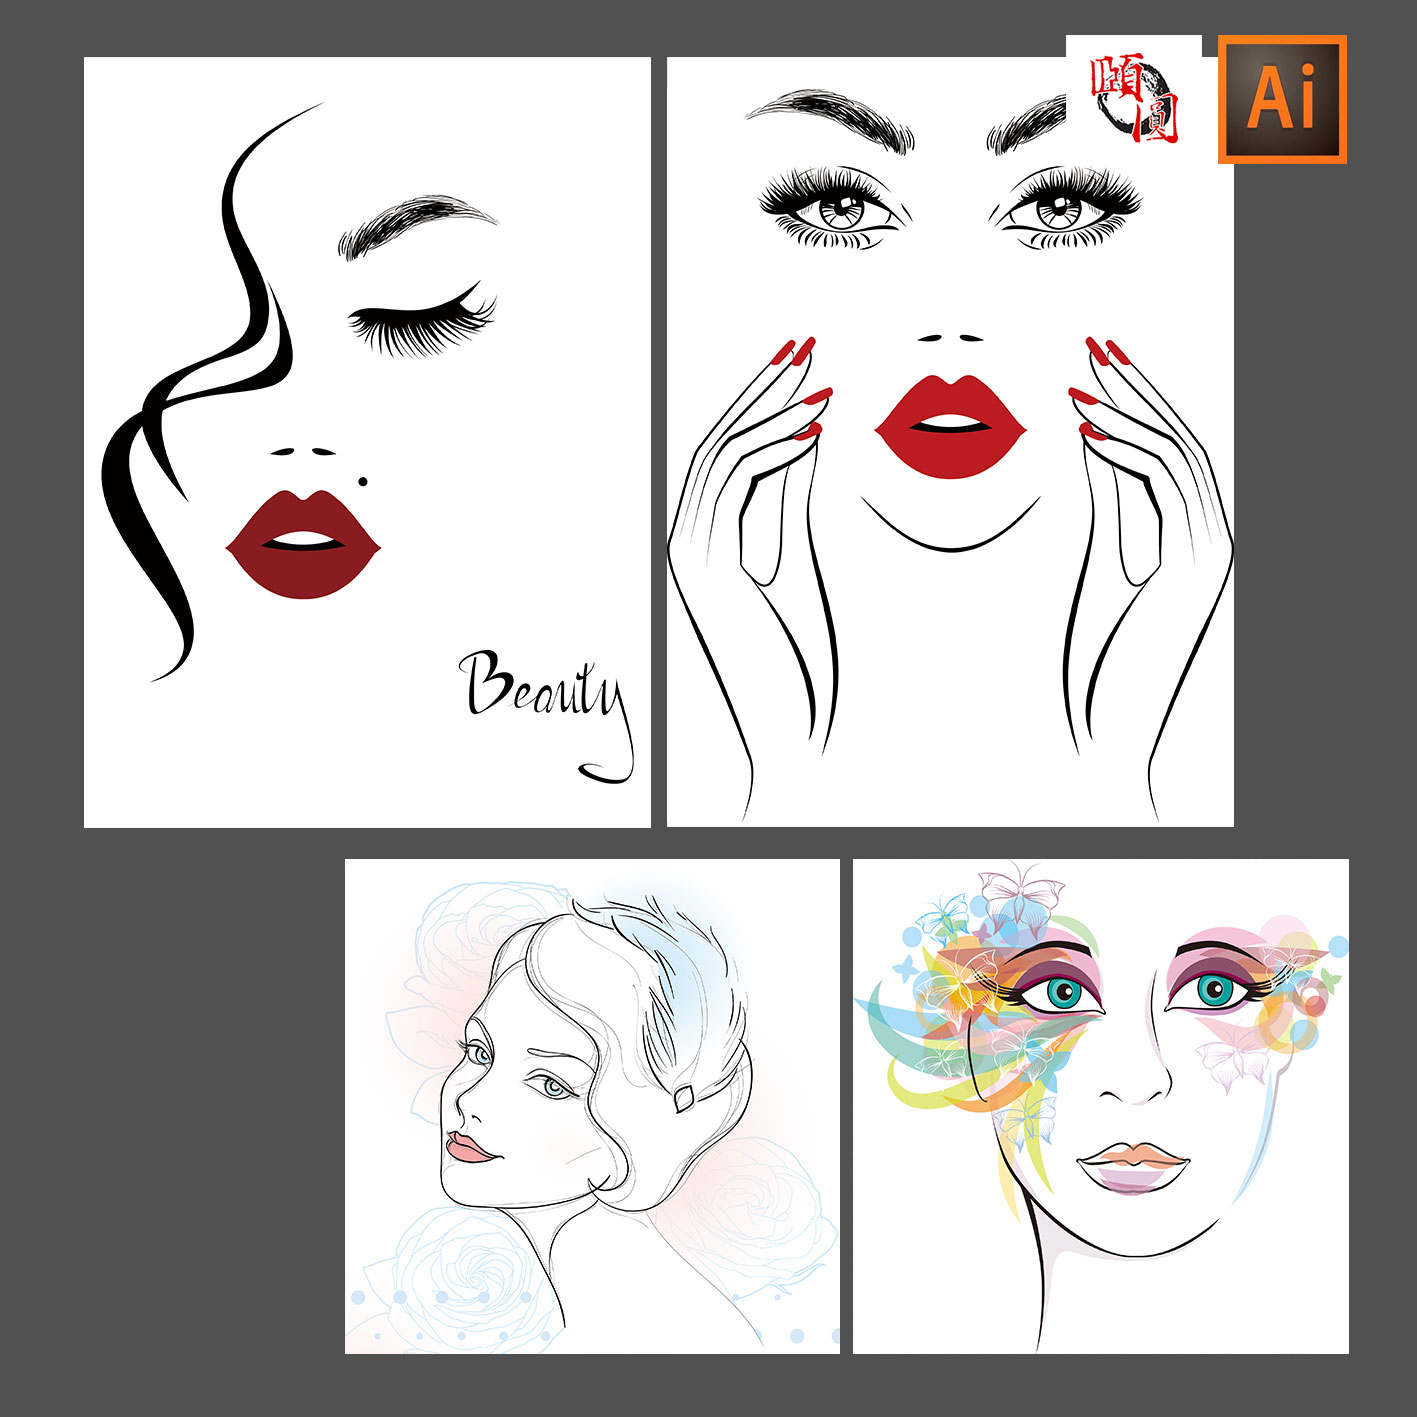 时尚美女发型造型美容手绘抽象人物头像插图AI矢量设计素材